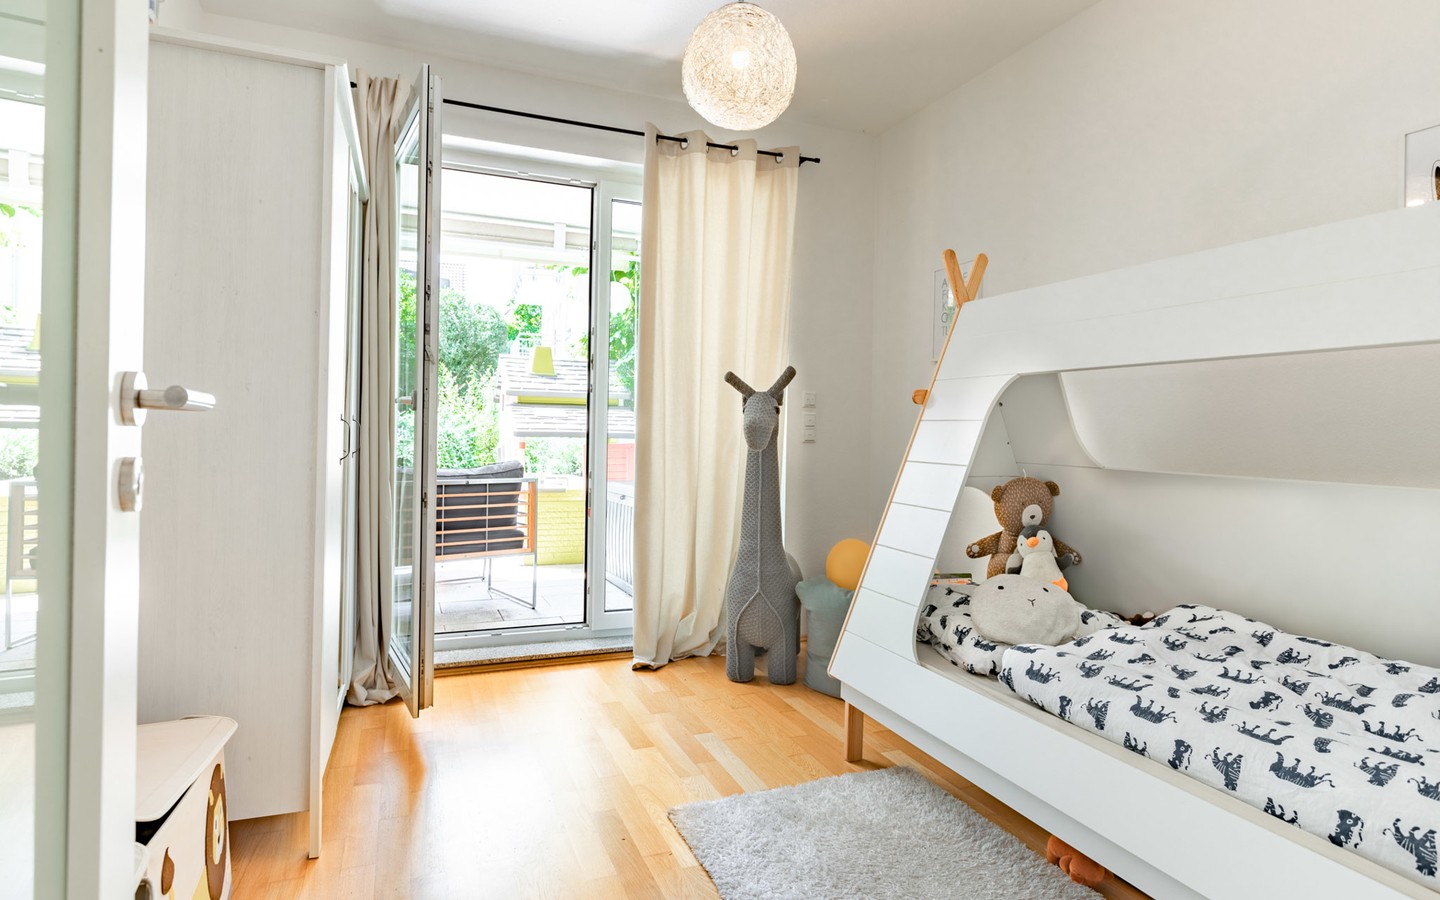 Kinderzimmer 1 - Haus-im-Haus-Feeling: Exklusive Maisonette-Wohnung mit separatem Eingang, Terrasse und Balkon